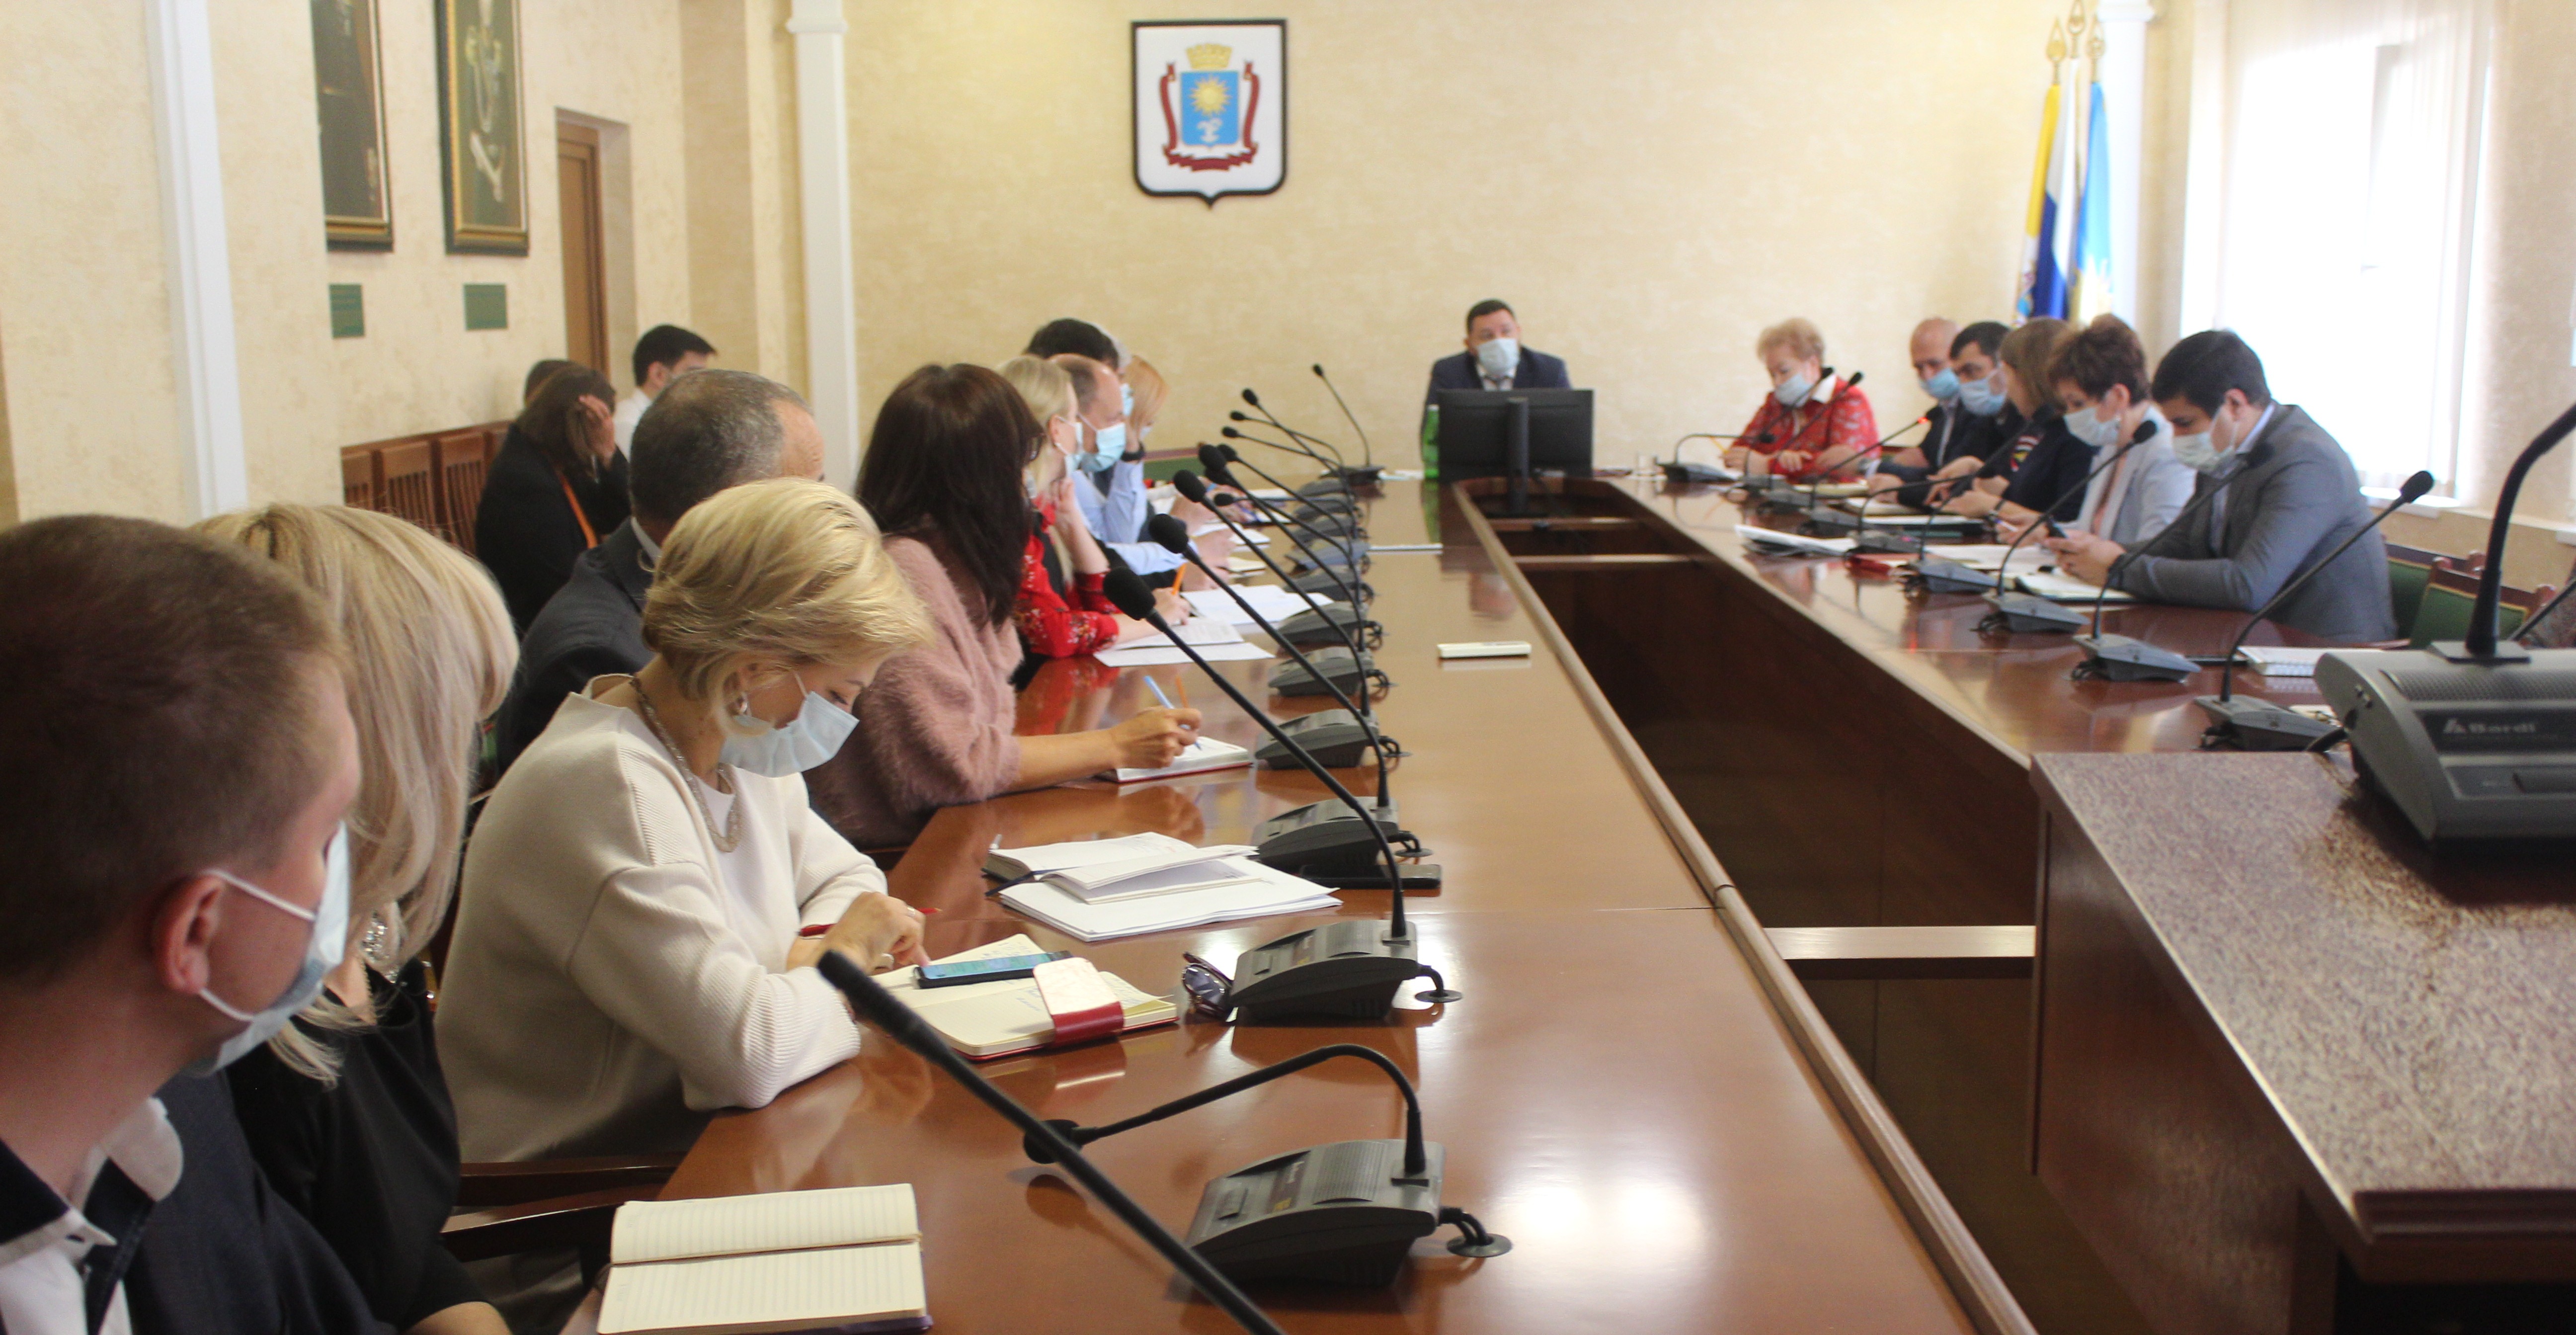 О соблюдении мер защиты от распространения вируса говорили на аппаратном совещании в мэрии Кисловодска